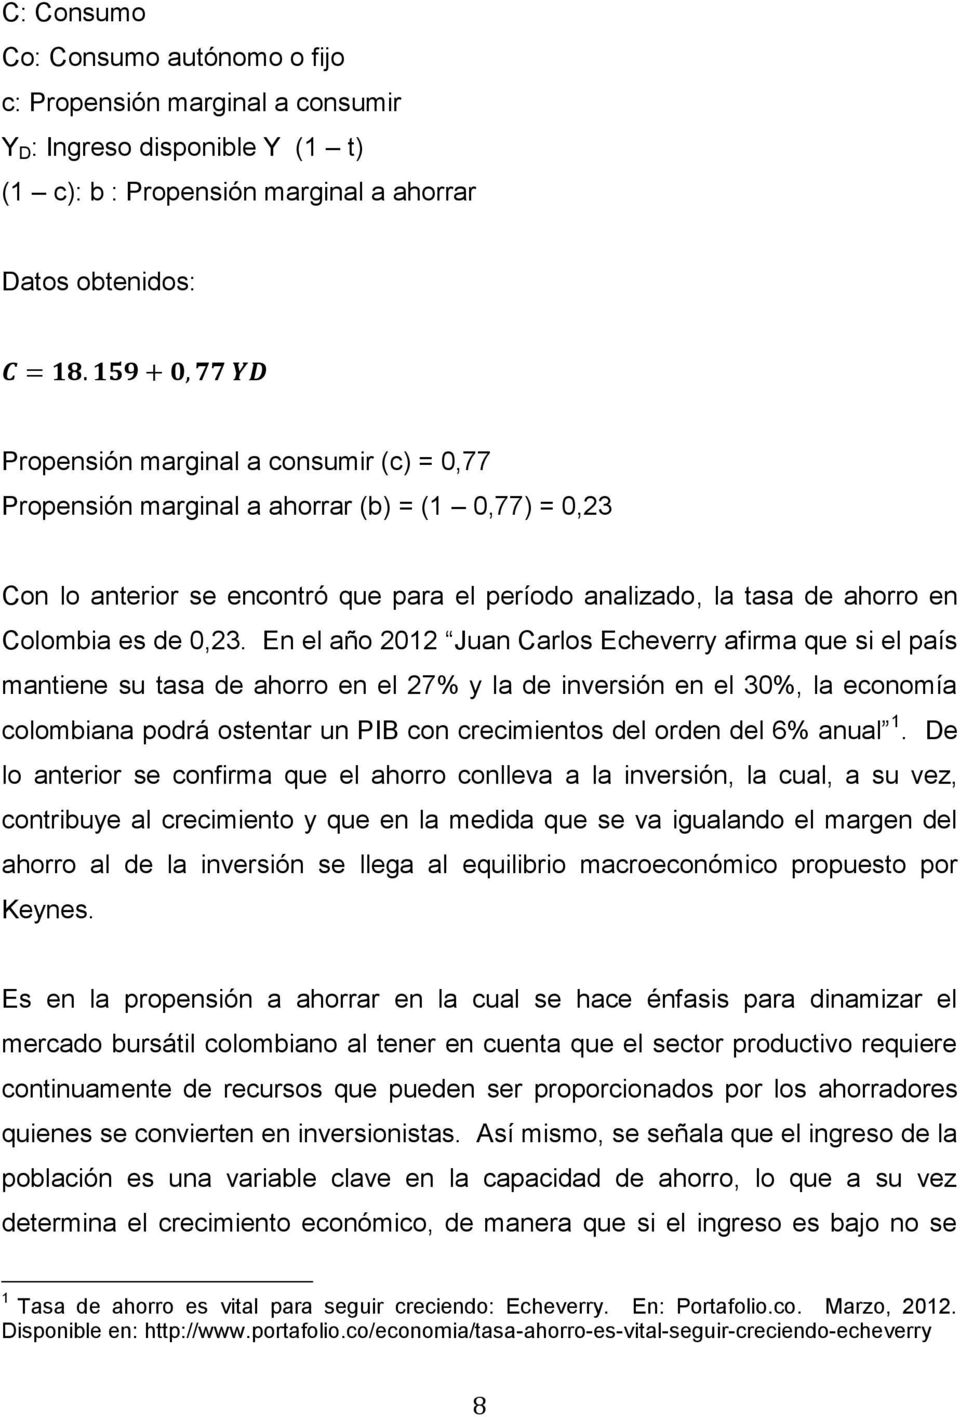 En el año 2012 Juan Carlos Echeverry afirma que si el país mantiene su tasa de ahorro en el 27% y la de inversión en el 30%, la economía colombiana podrá ostentar un PIB con crecimientos del orden